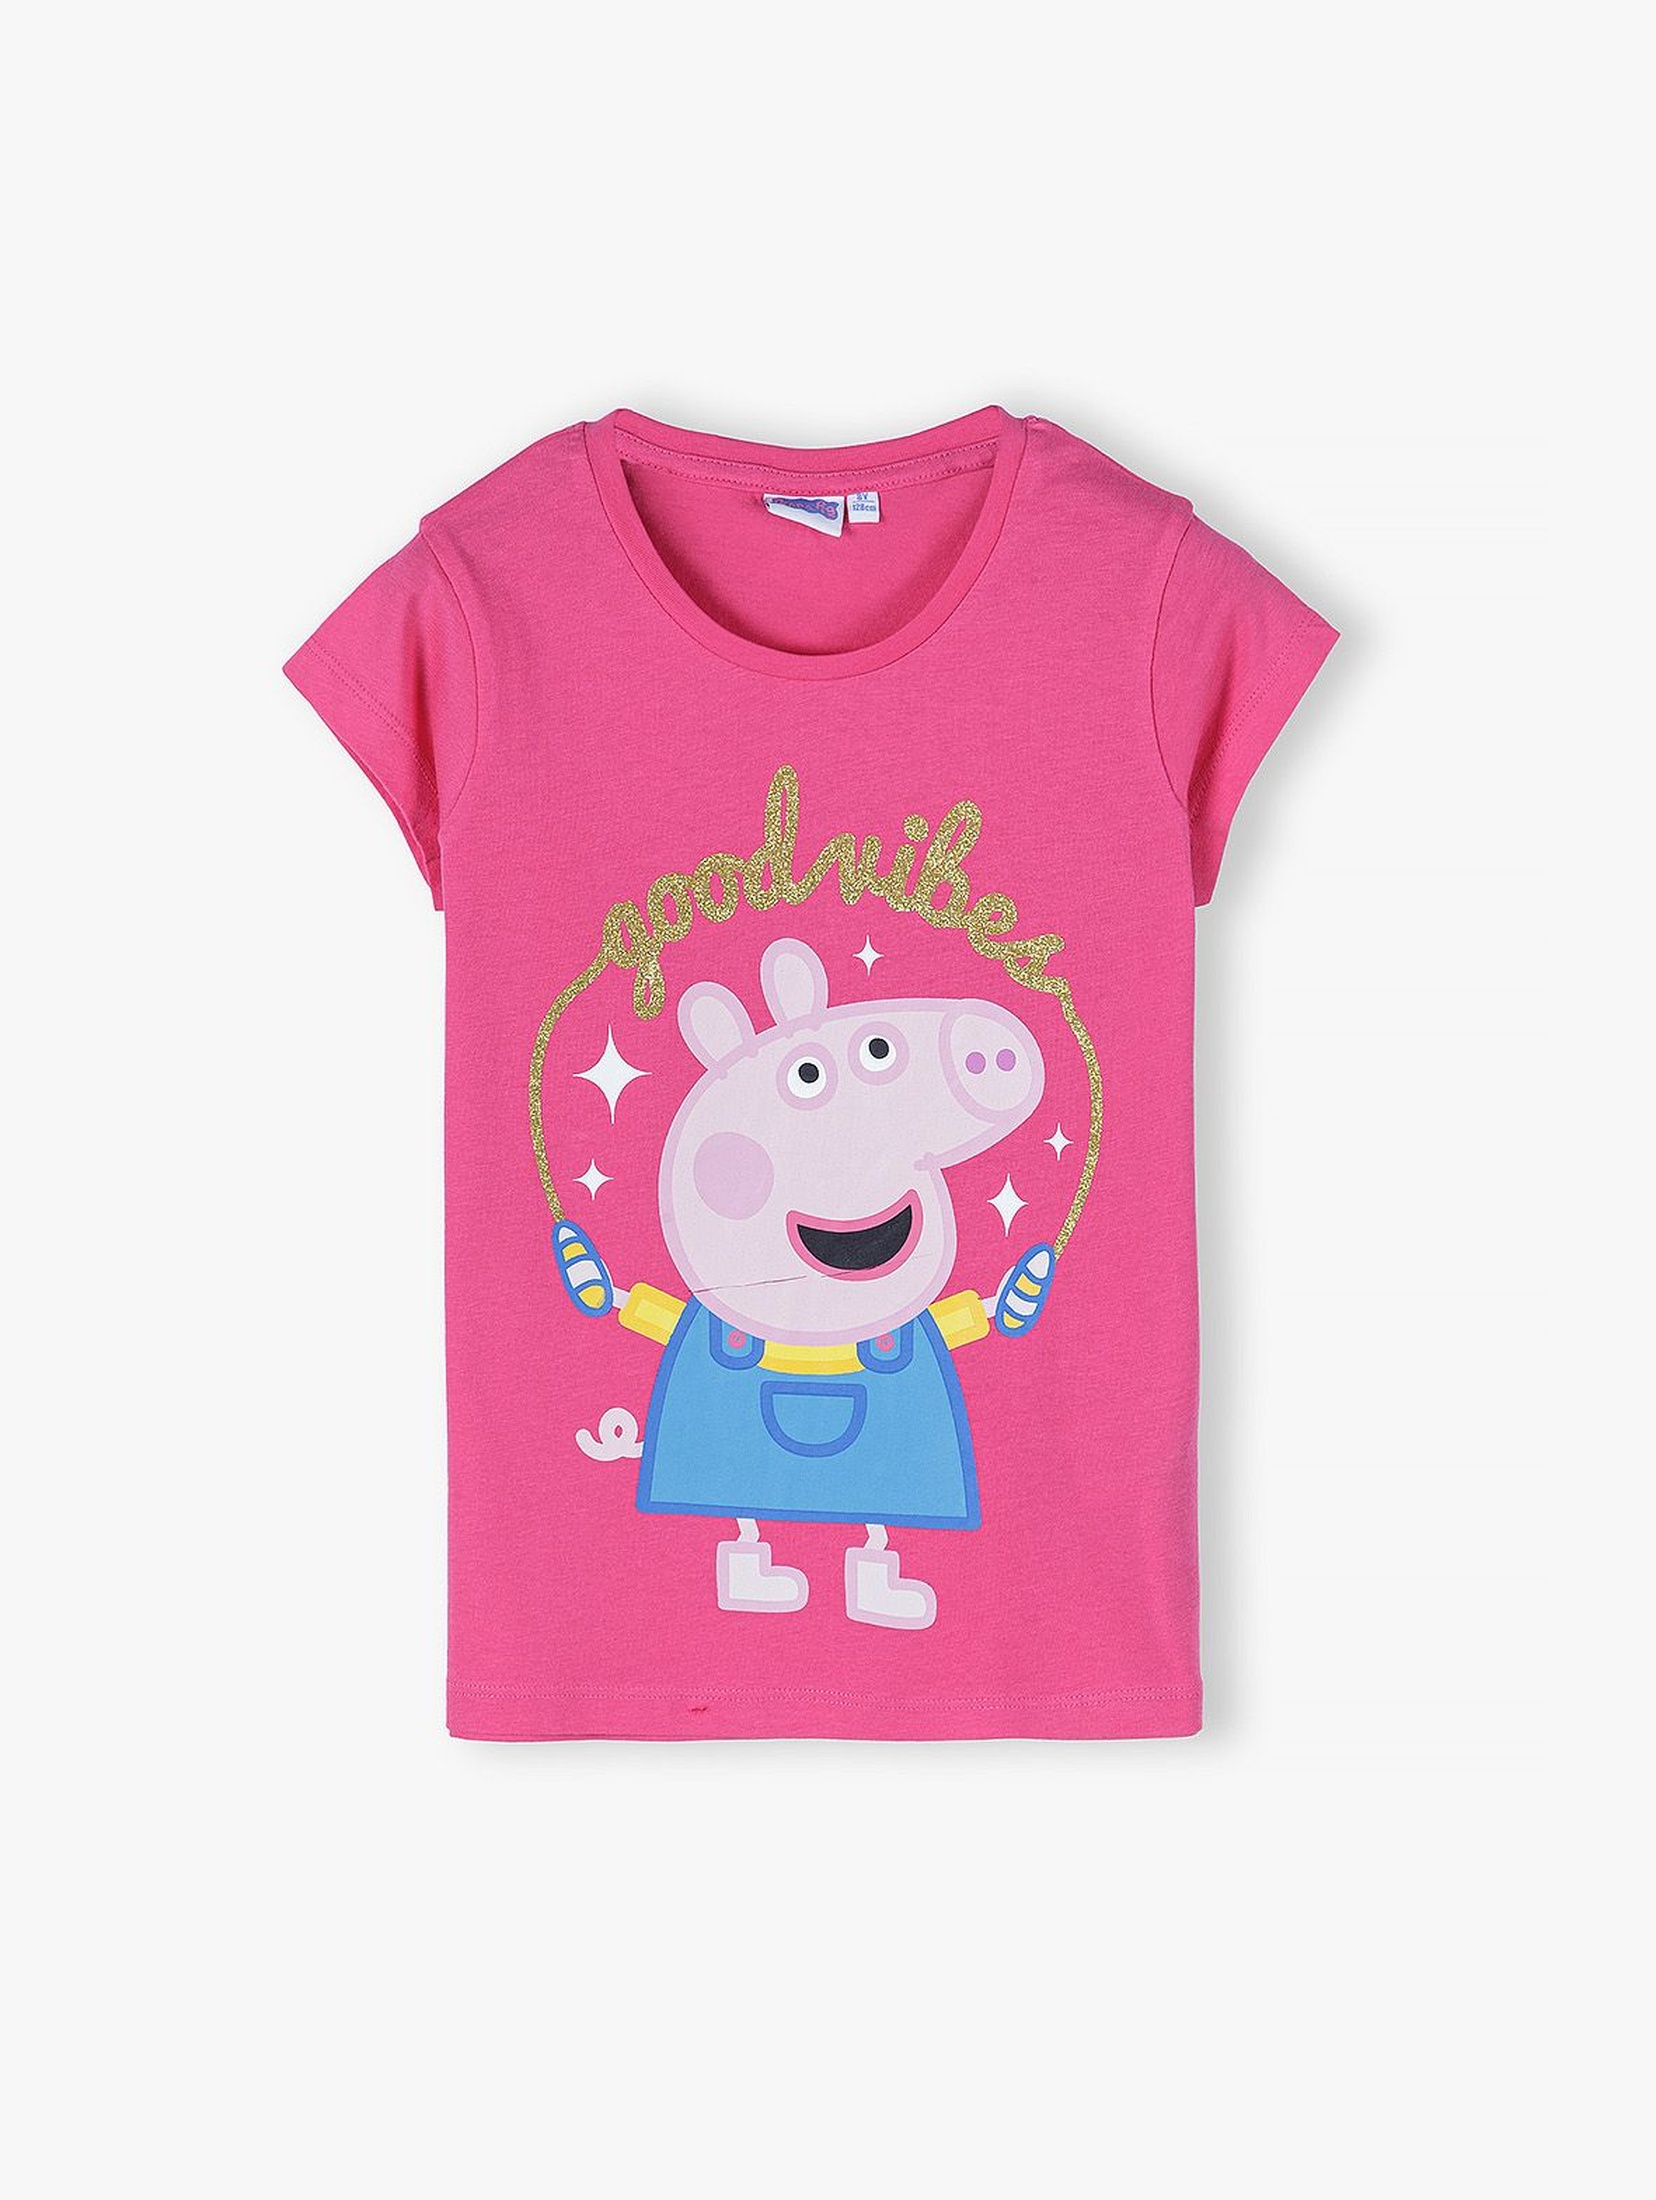 T-shirt dziewczęcy Świnka Peppa- różowy